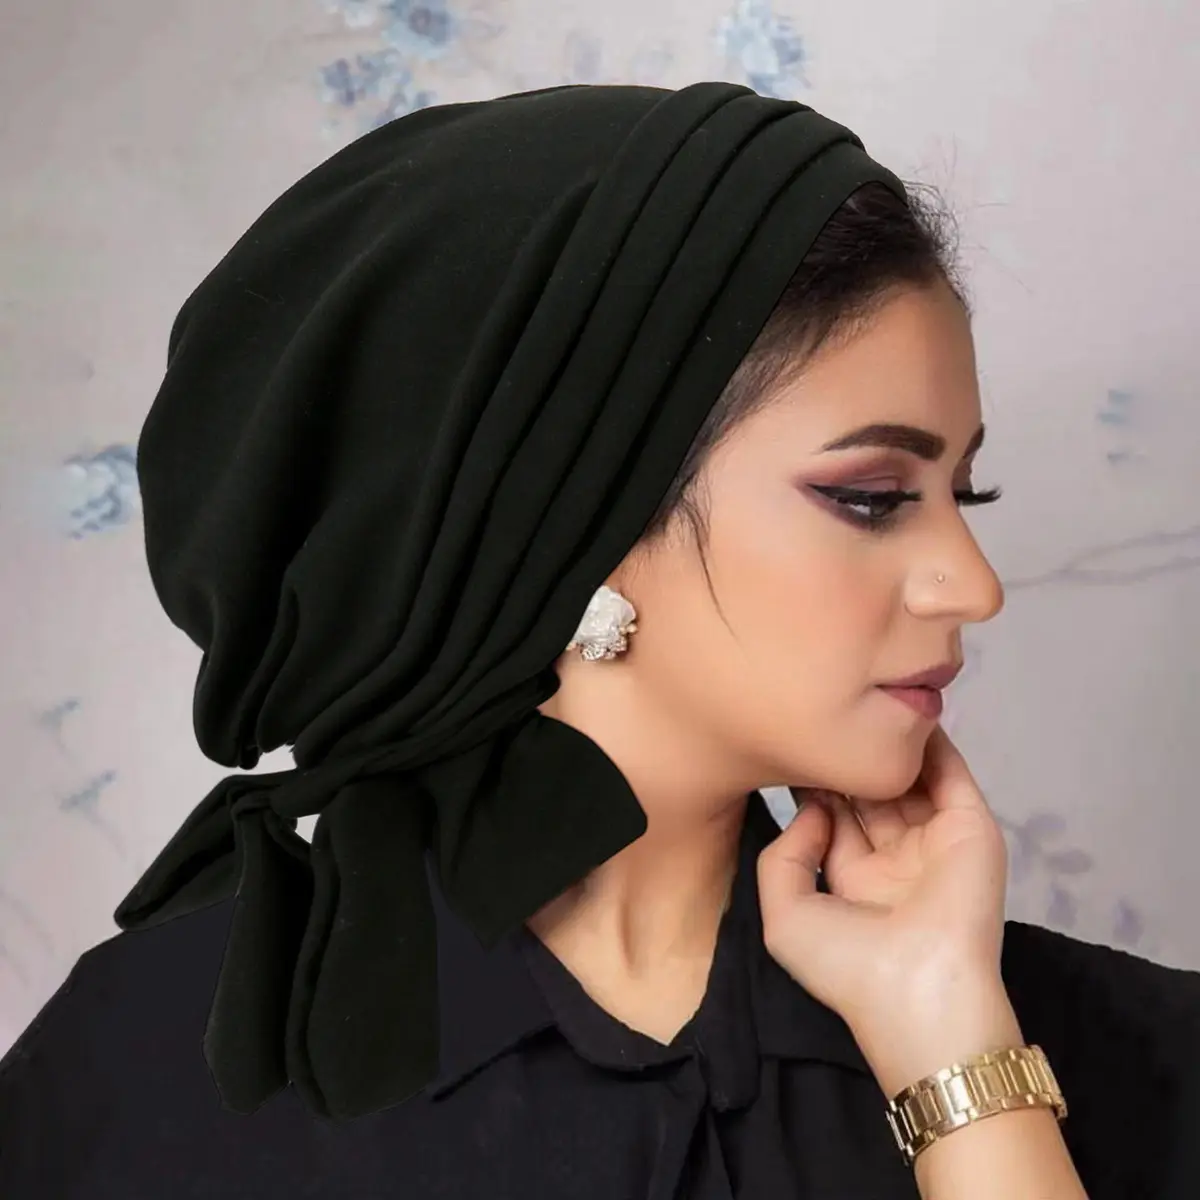 Go Party Neueste 9-Farben ethnischer Stil muslimische solide Farbe stretchy Turban Hüte Kopfbedeckung Chemo-Kopfbänder Hut für Damen Mädchen